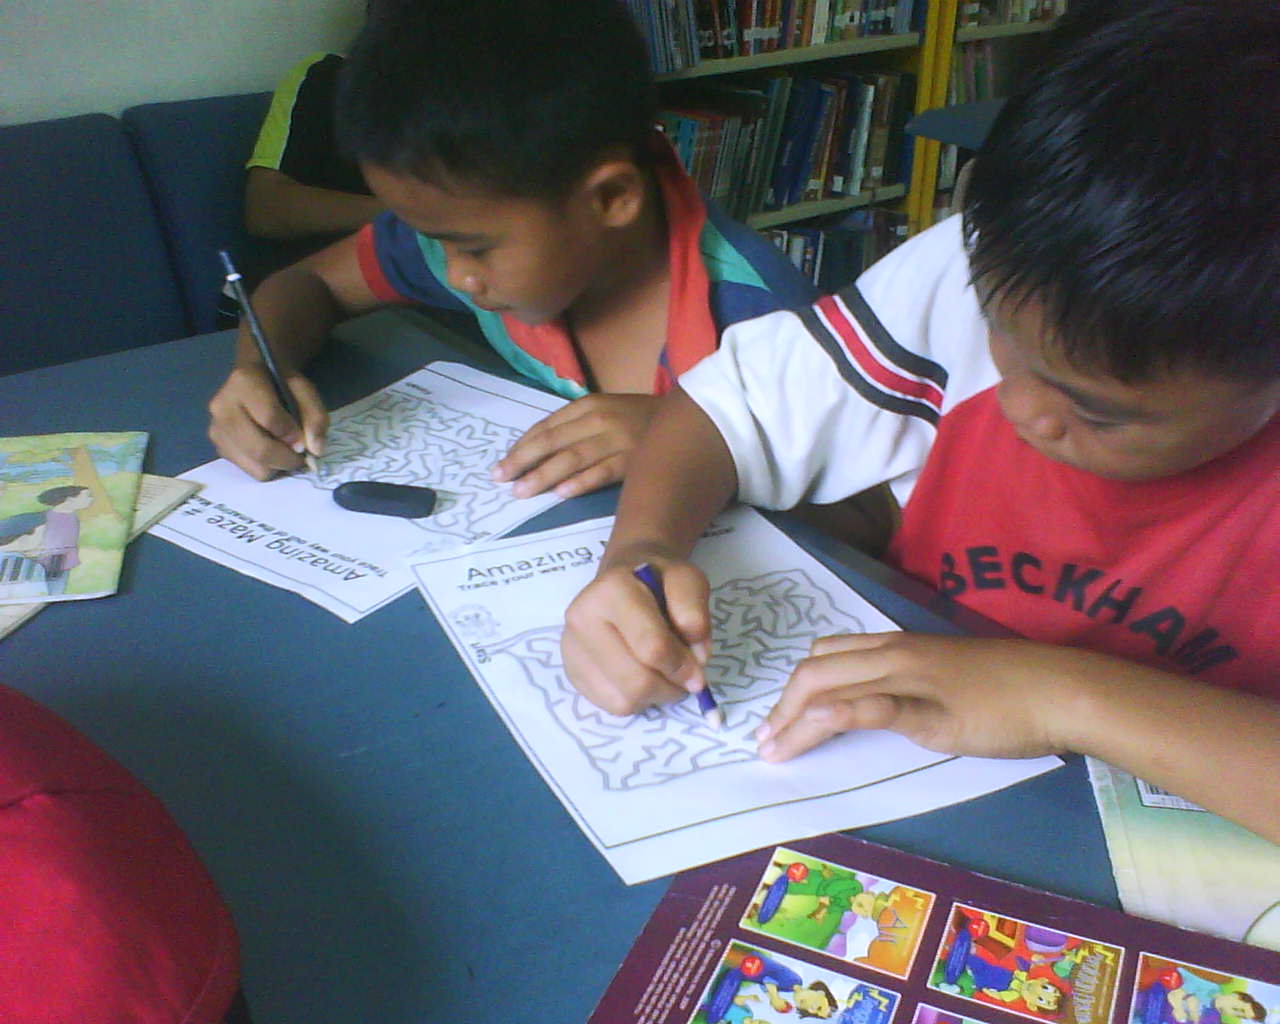 Perpustakaan Desa PNM Kg Pomotodon, Inanam Sabah: April 2011